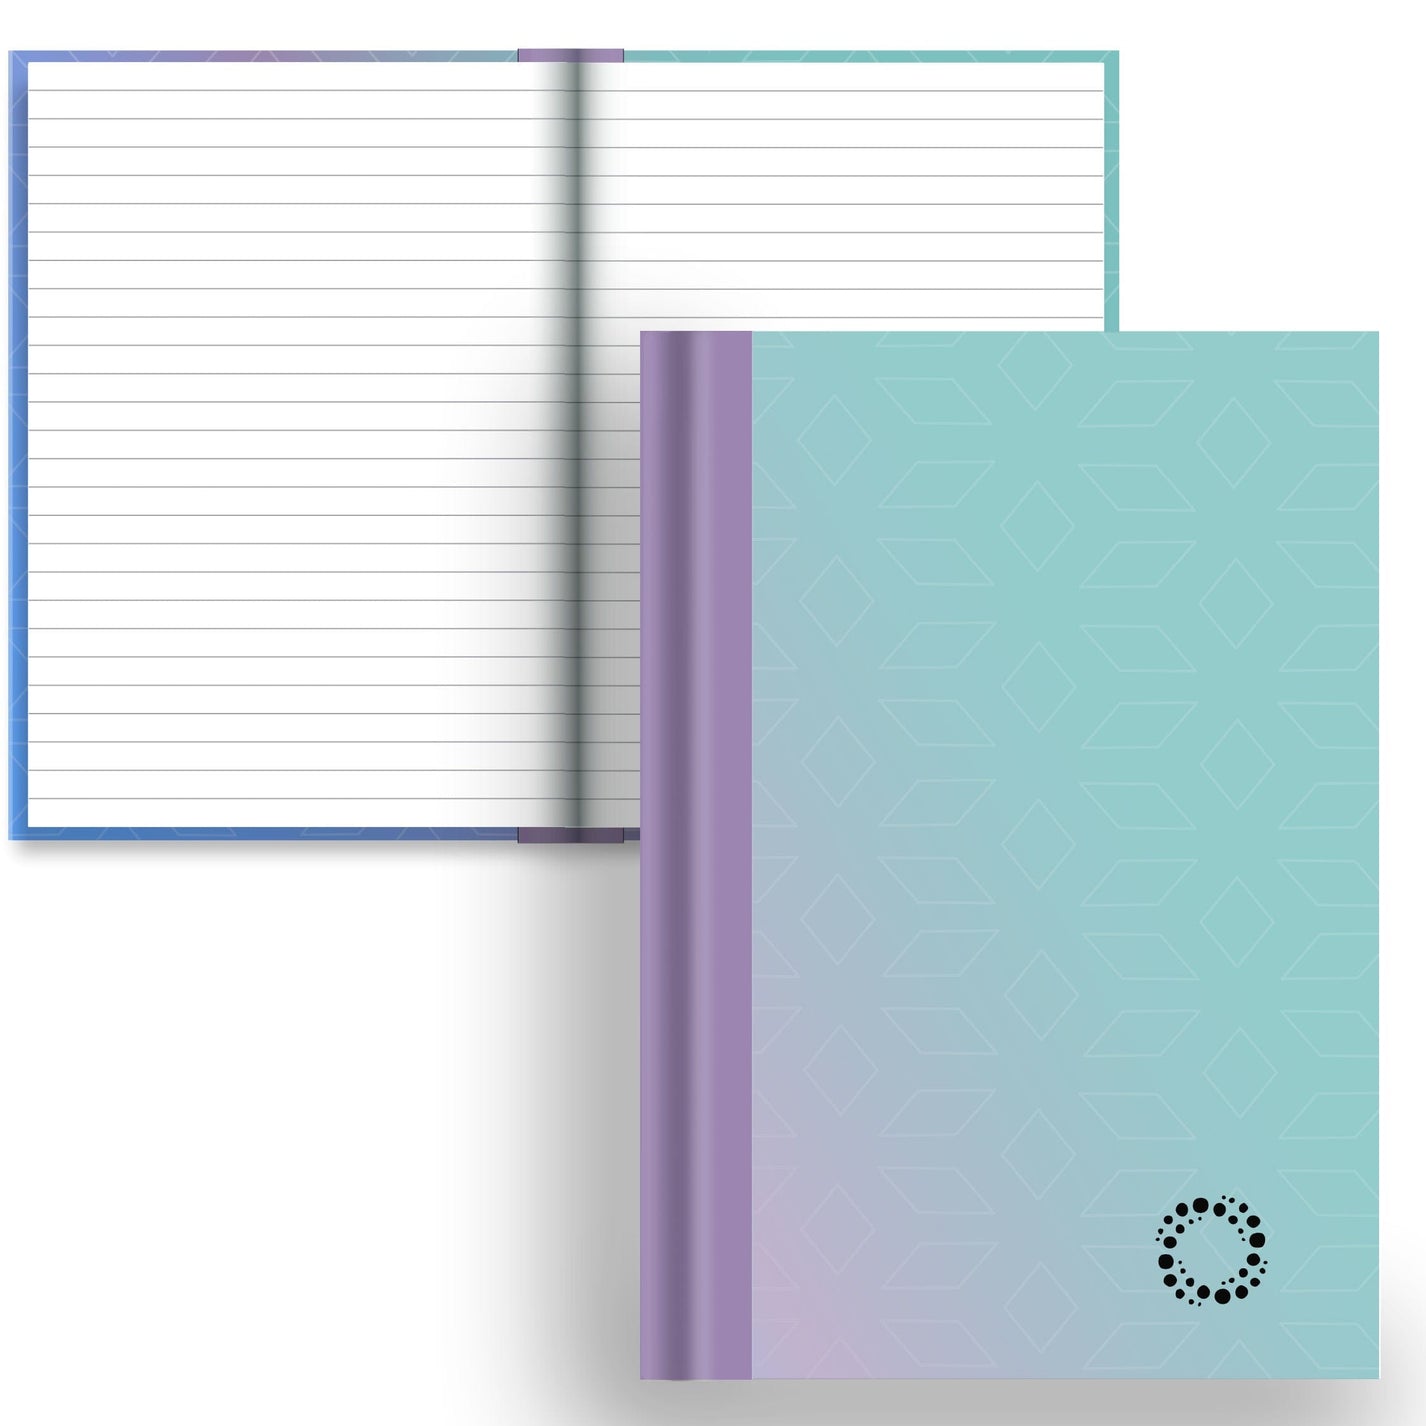 DayDot Journals A5 Notebook Lined Paper Ombre - A5 Hardback Notebook